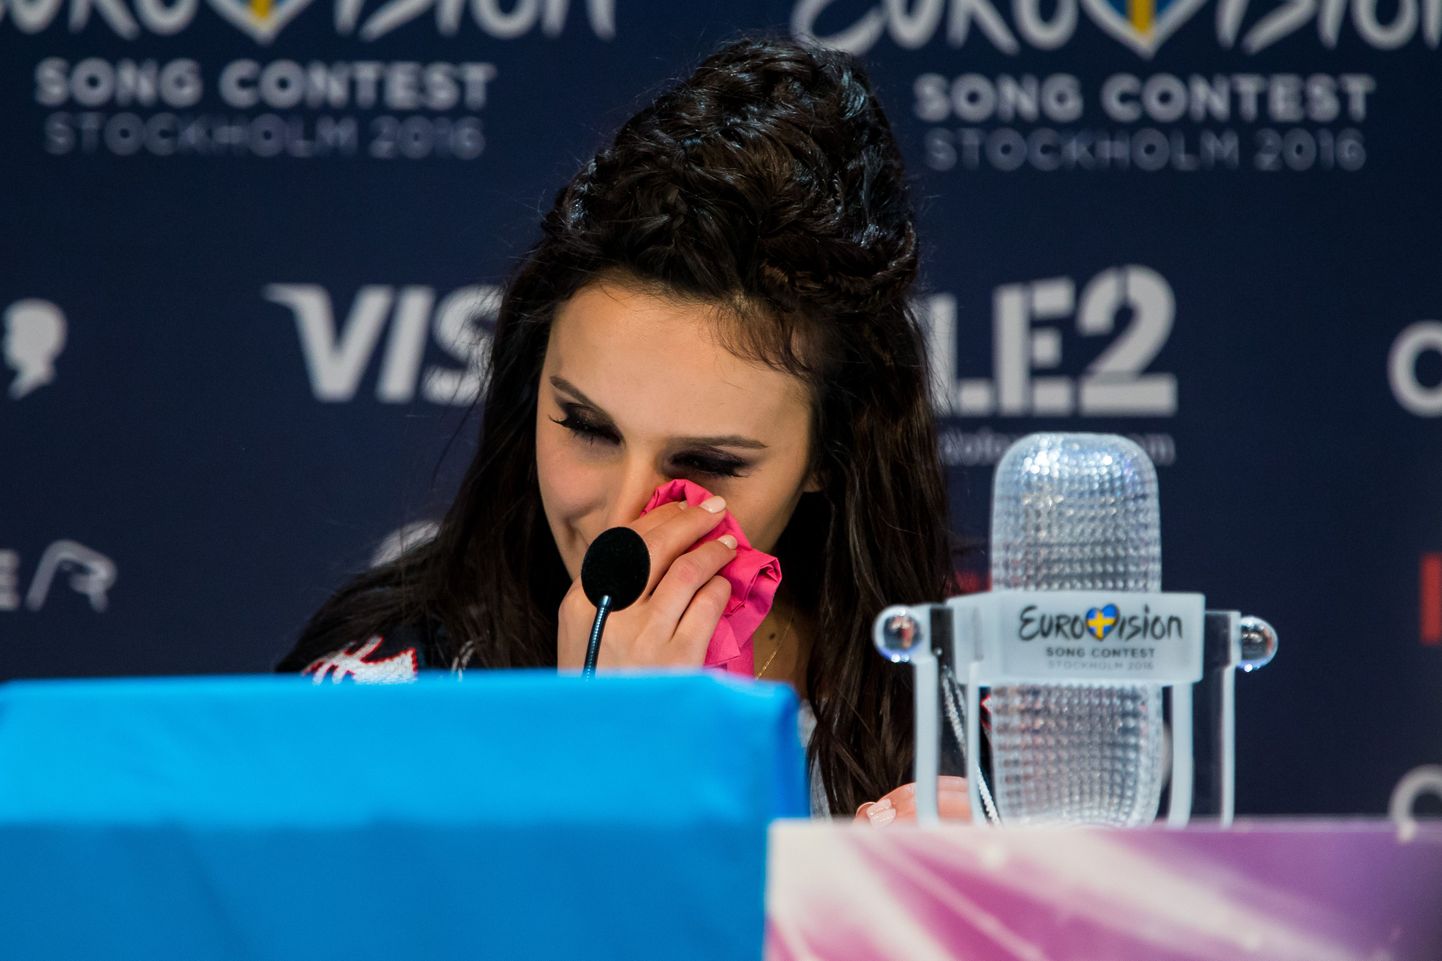 Евровидение 2016, победительницей стала участница из Украины Джамала.